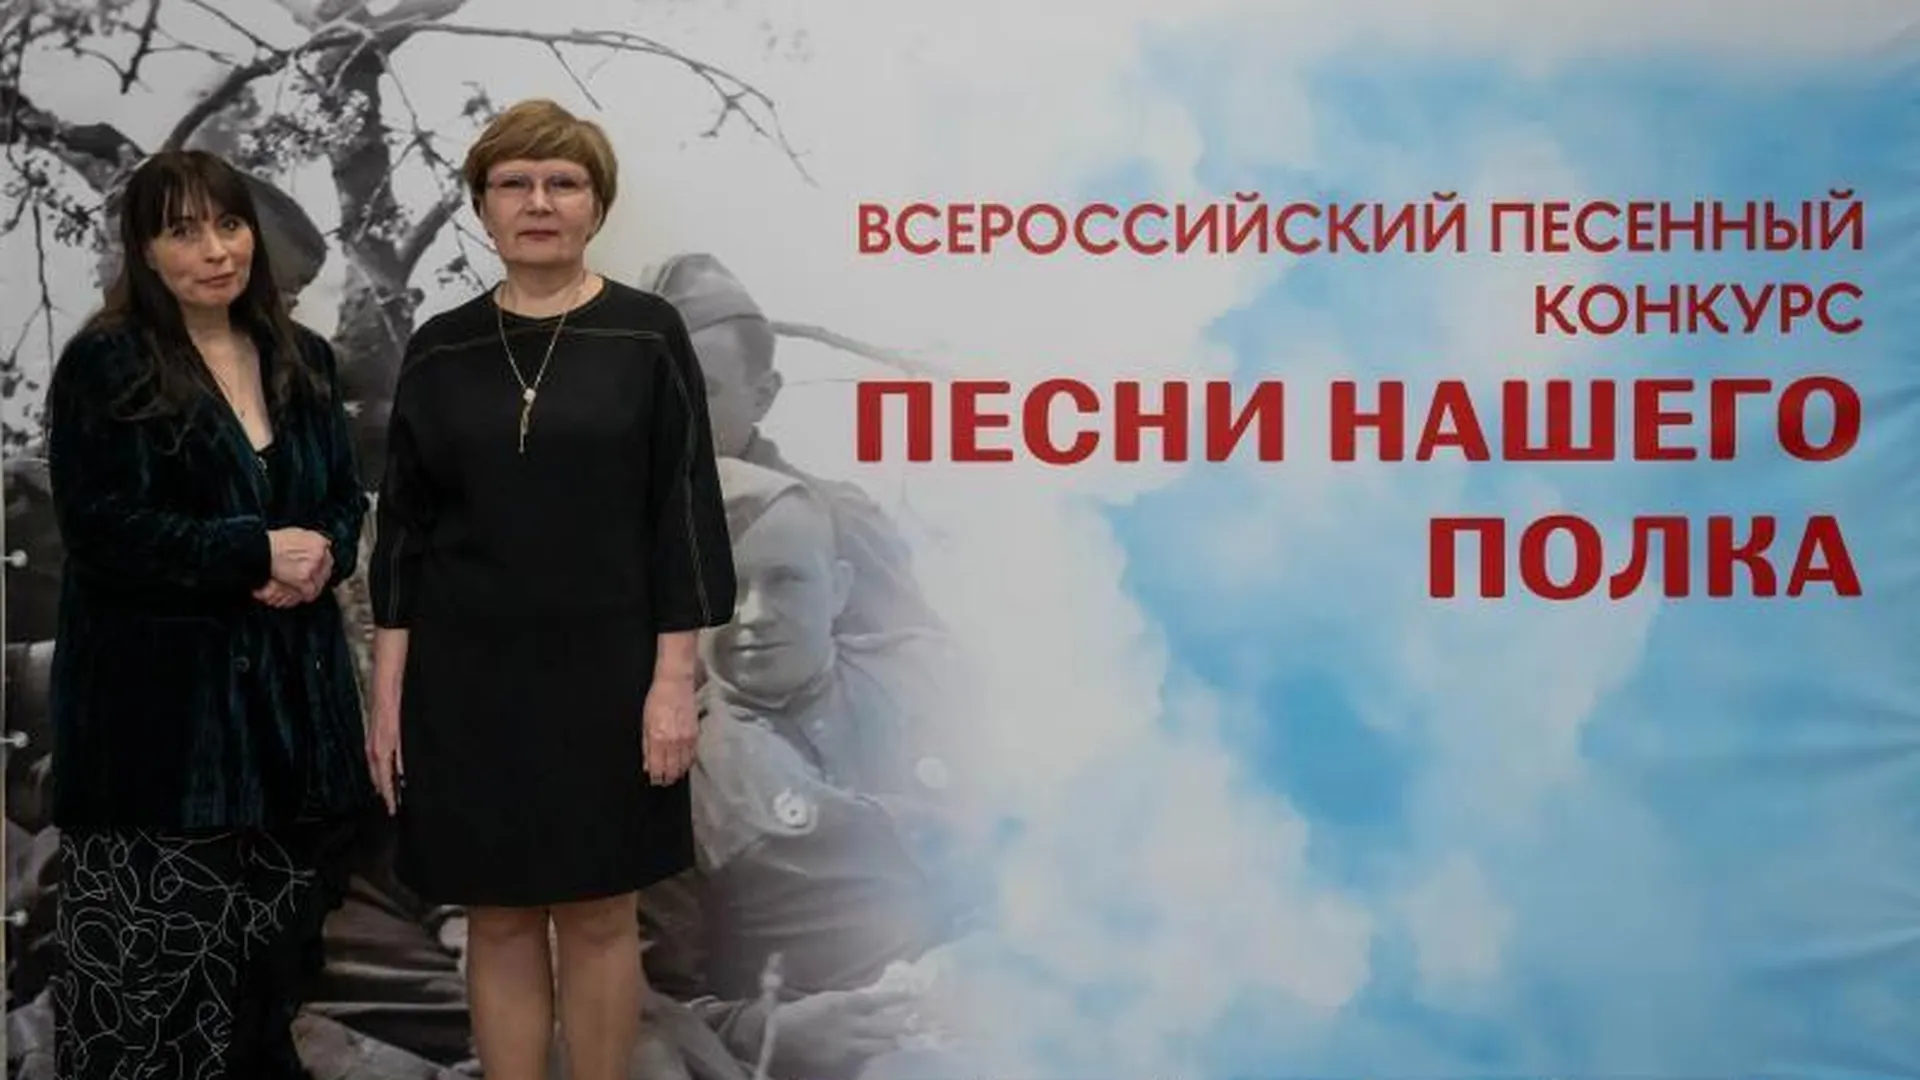 Жителей Подмосковья приглашают к участию в патриотическом конкурсе «Песни нашего полка»